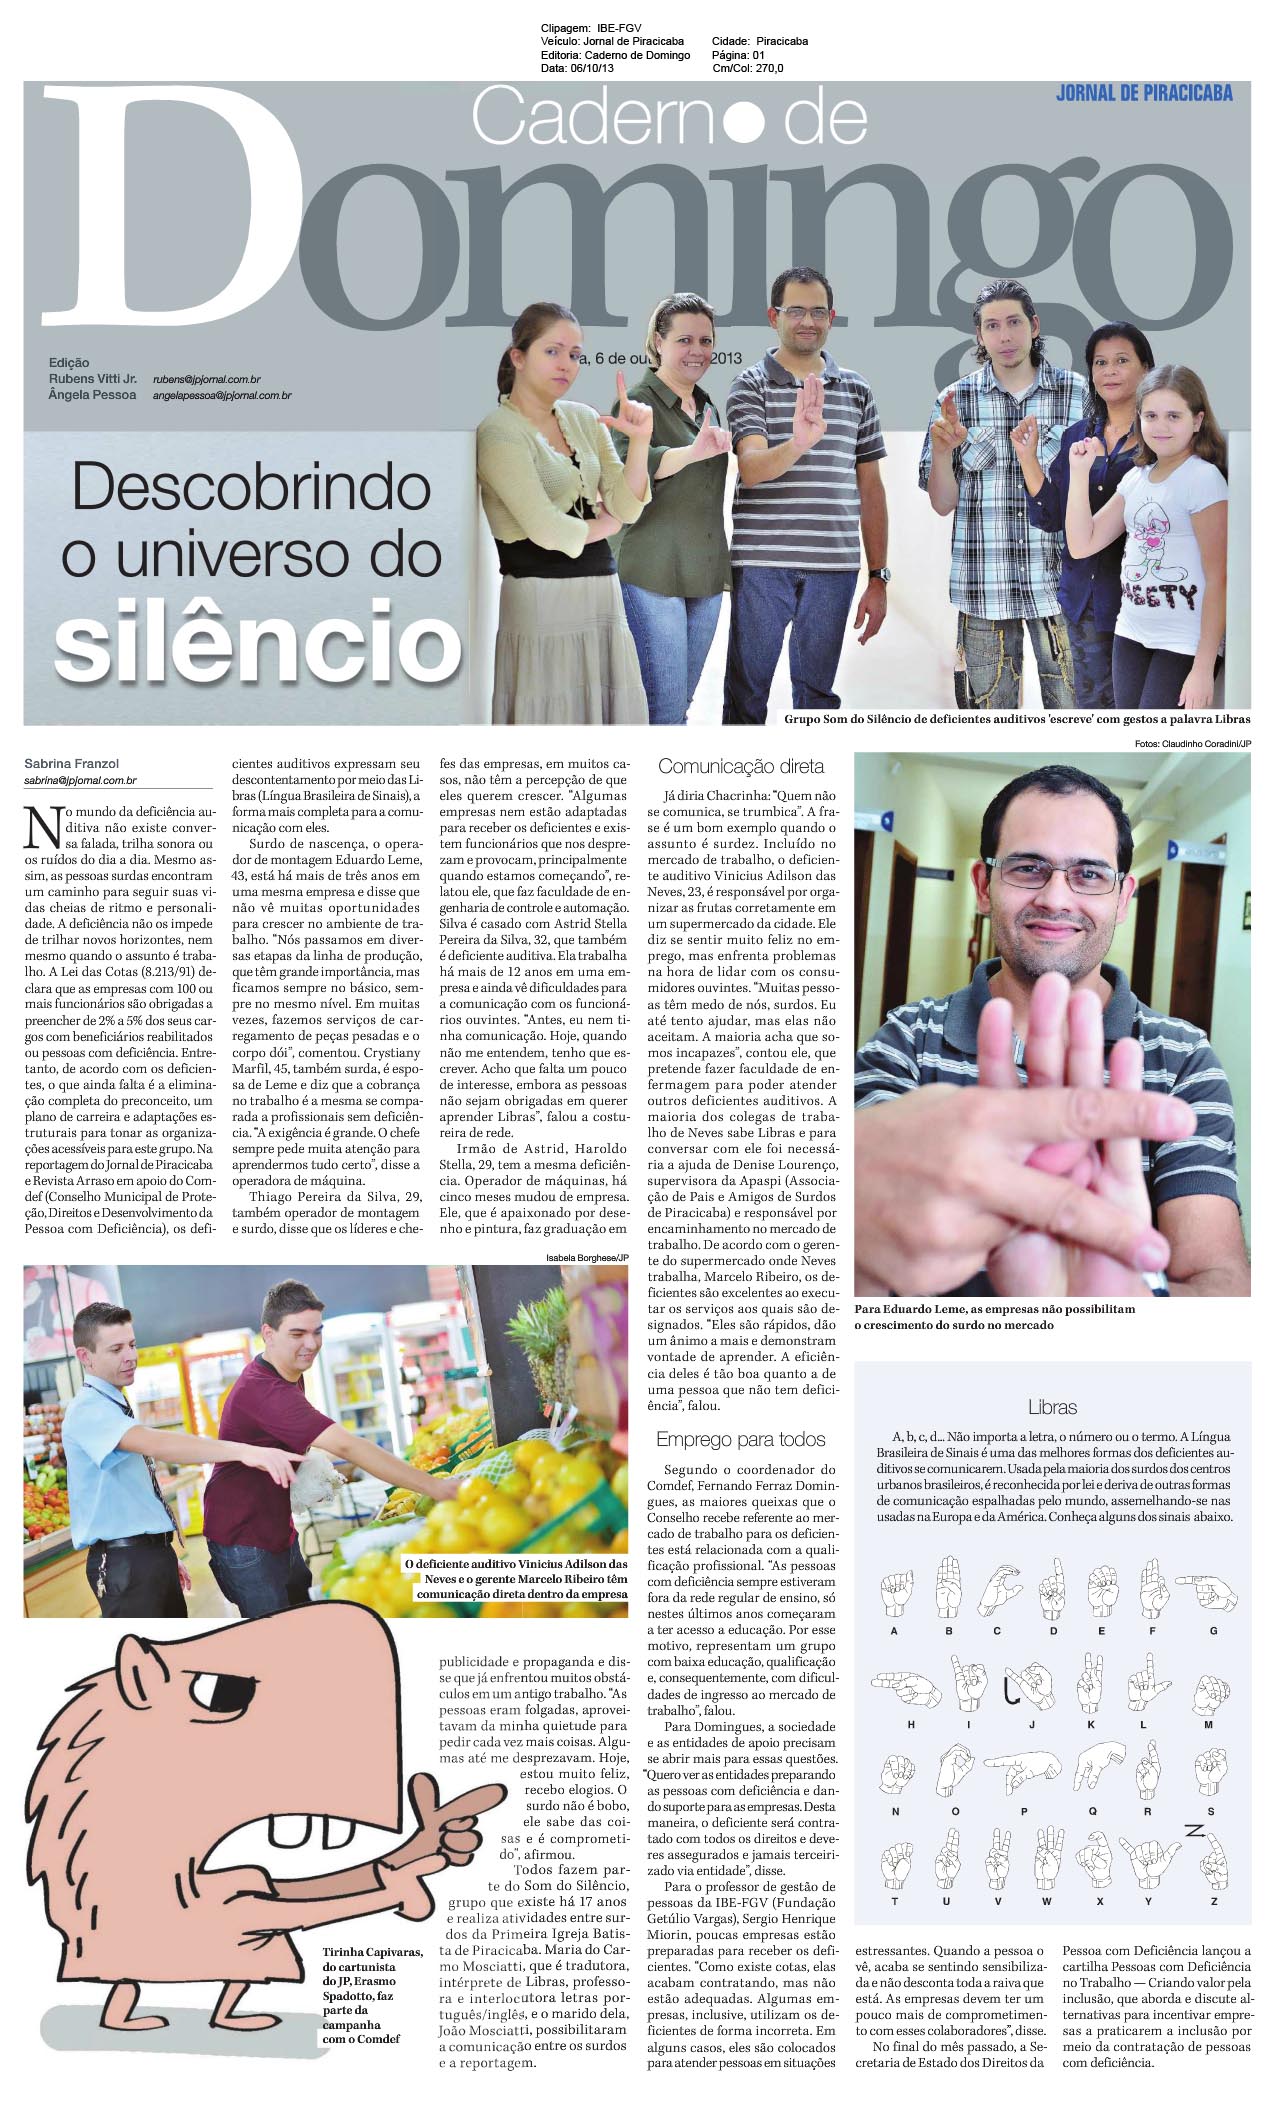 Jornal de Piracicaba - Caderno de Domingo - Outubro 2013